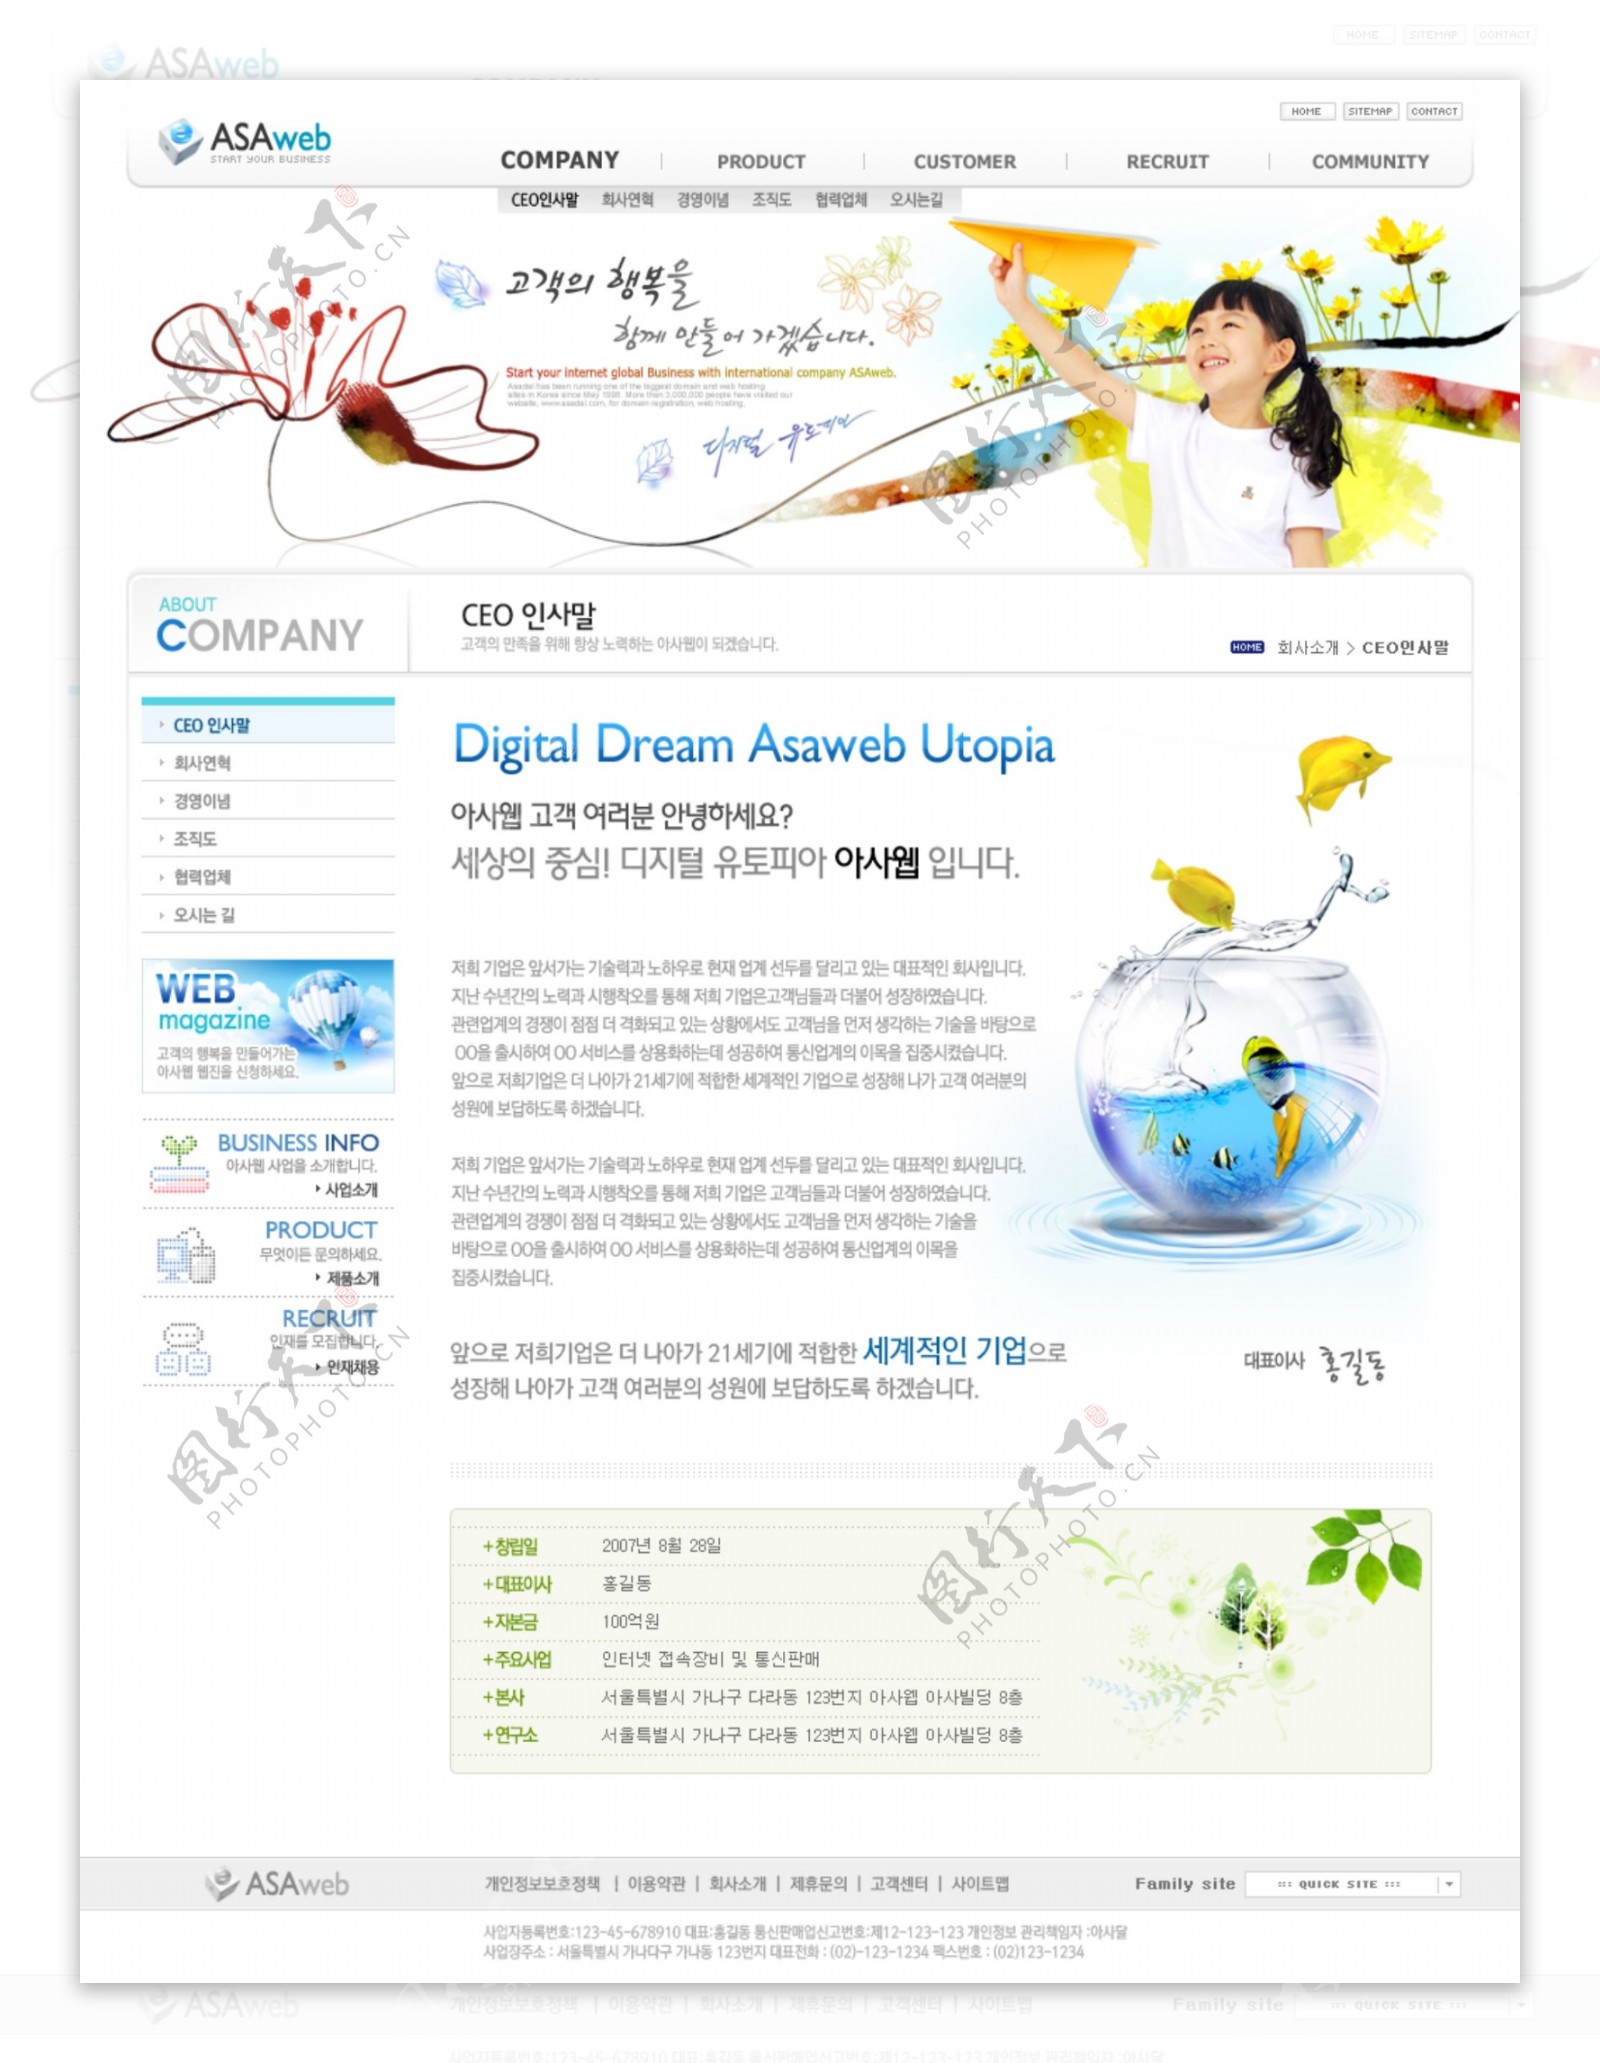 儿童电子信息化产品网页模板